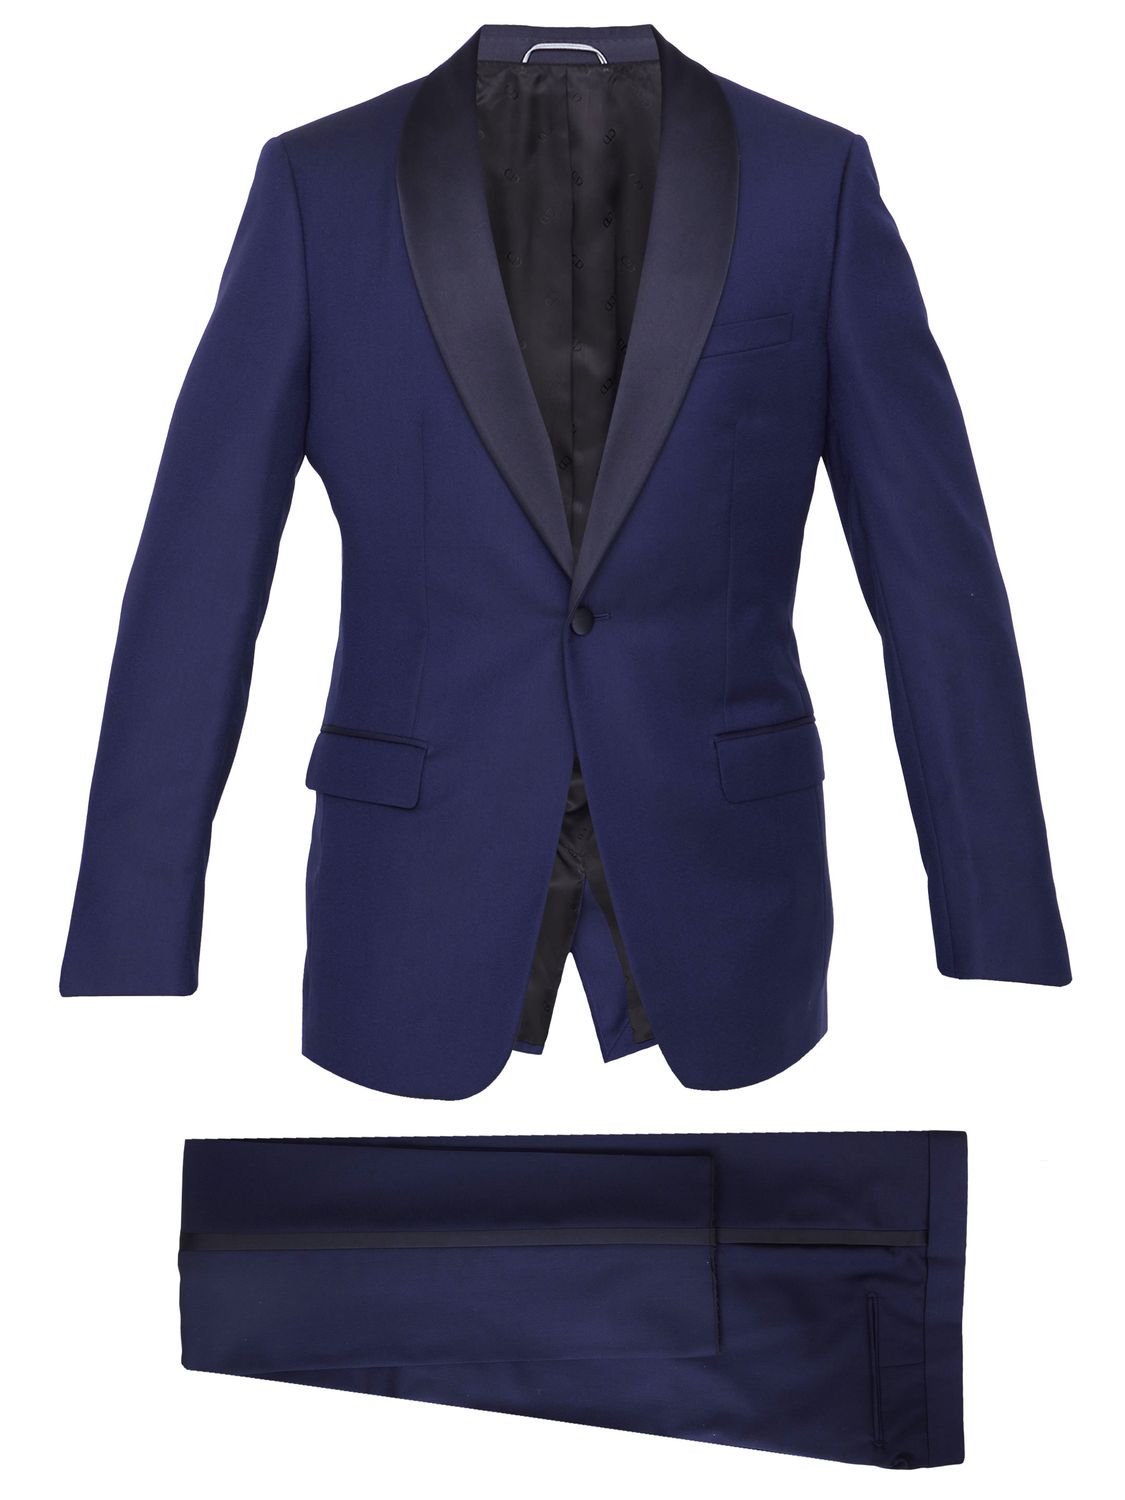 男士深蓝色羊绒晚礼服 - 浅蓝色侧边条纹 - 常规版型